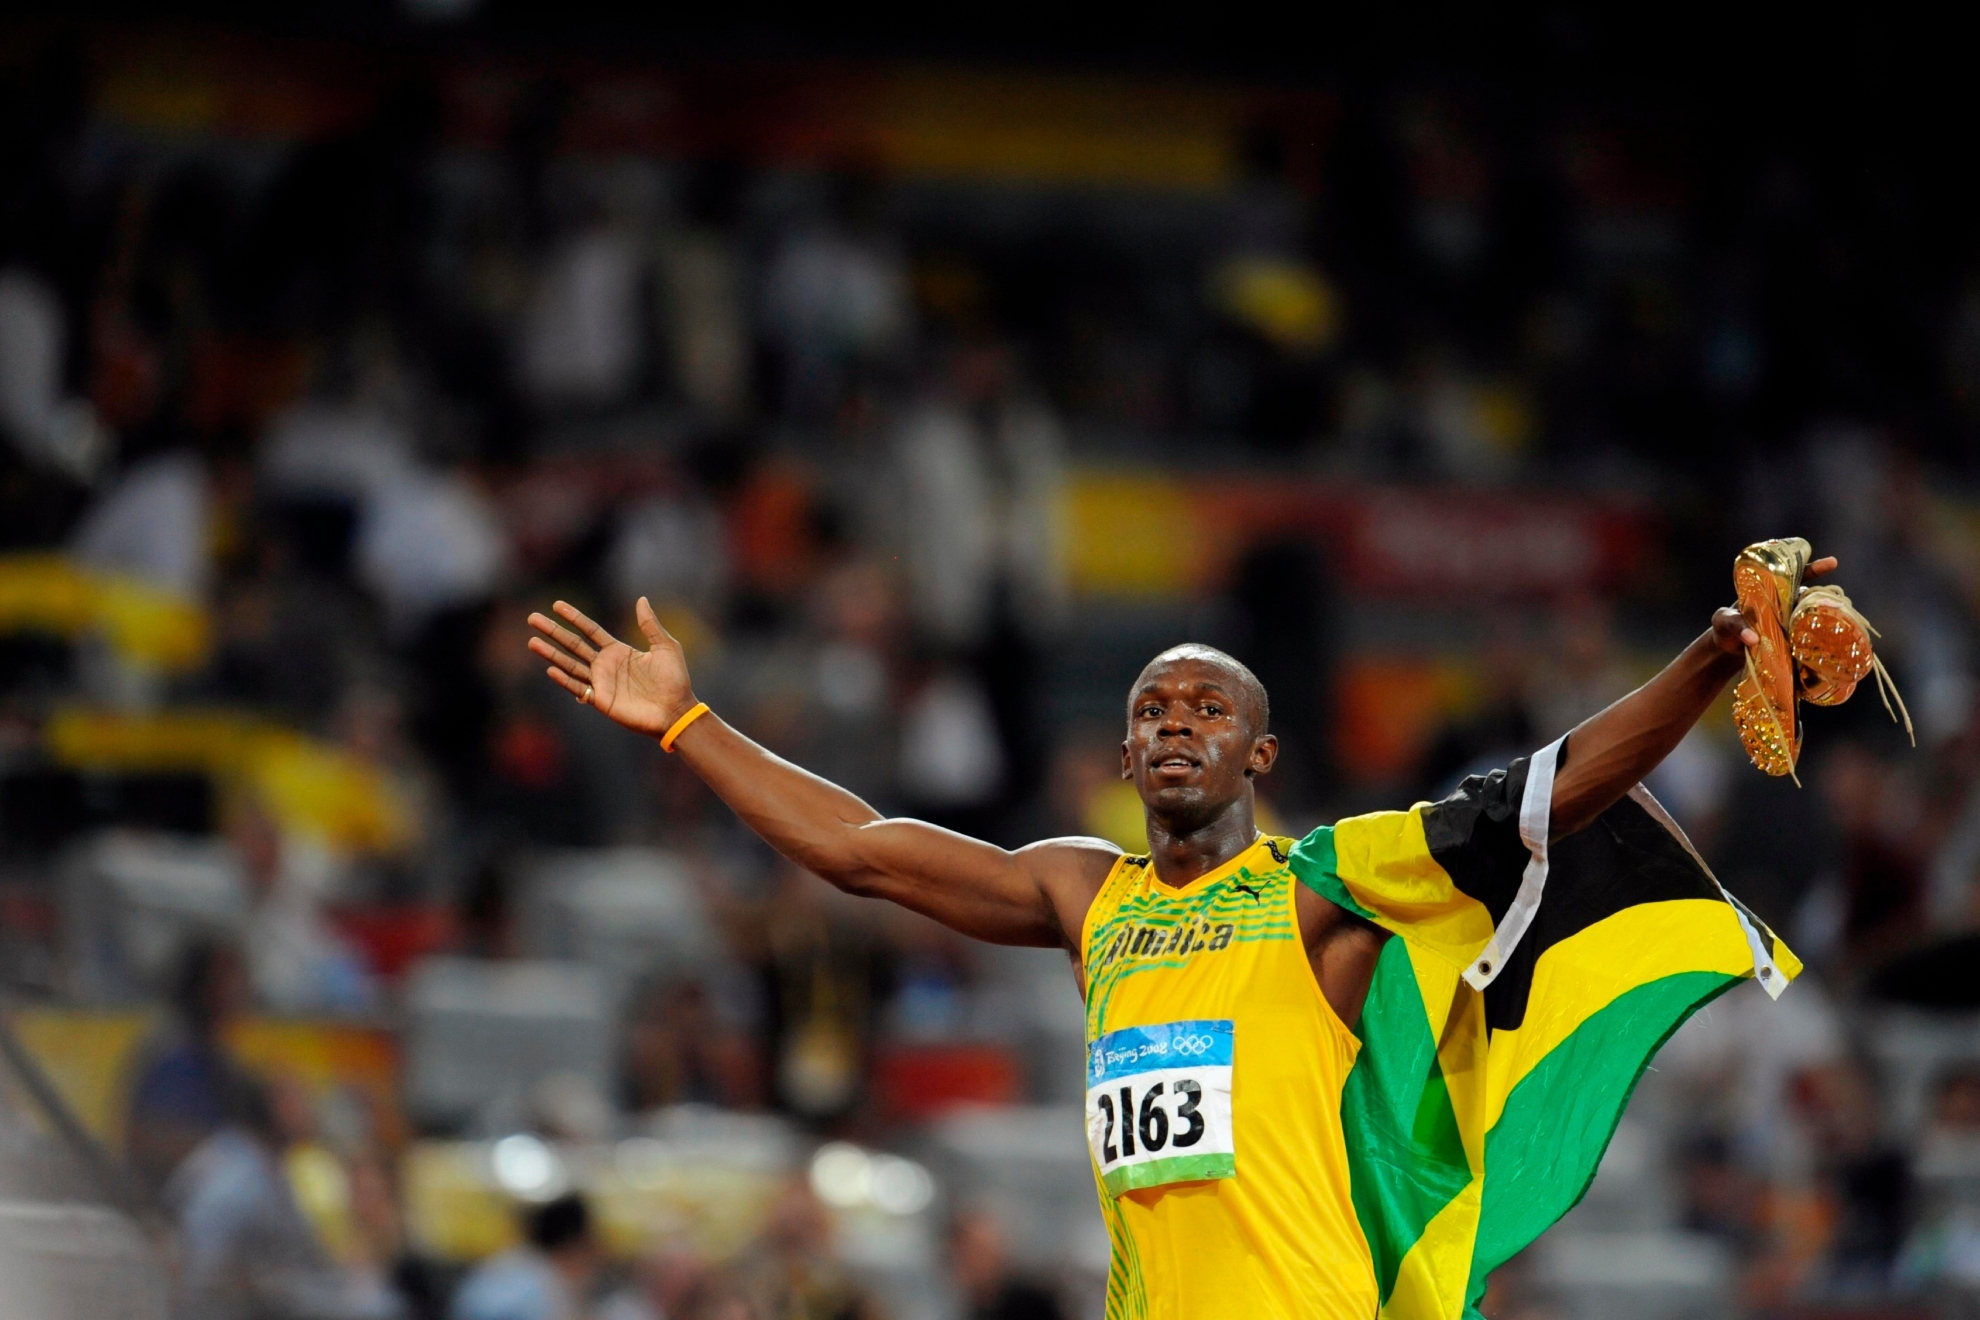 Usain Bolt, tras la desaparicin de su dinero: "No estoy arruinado"